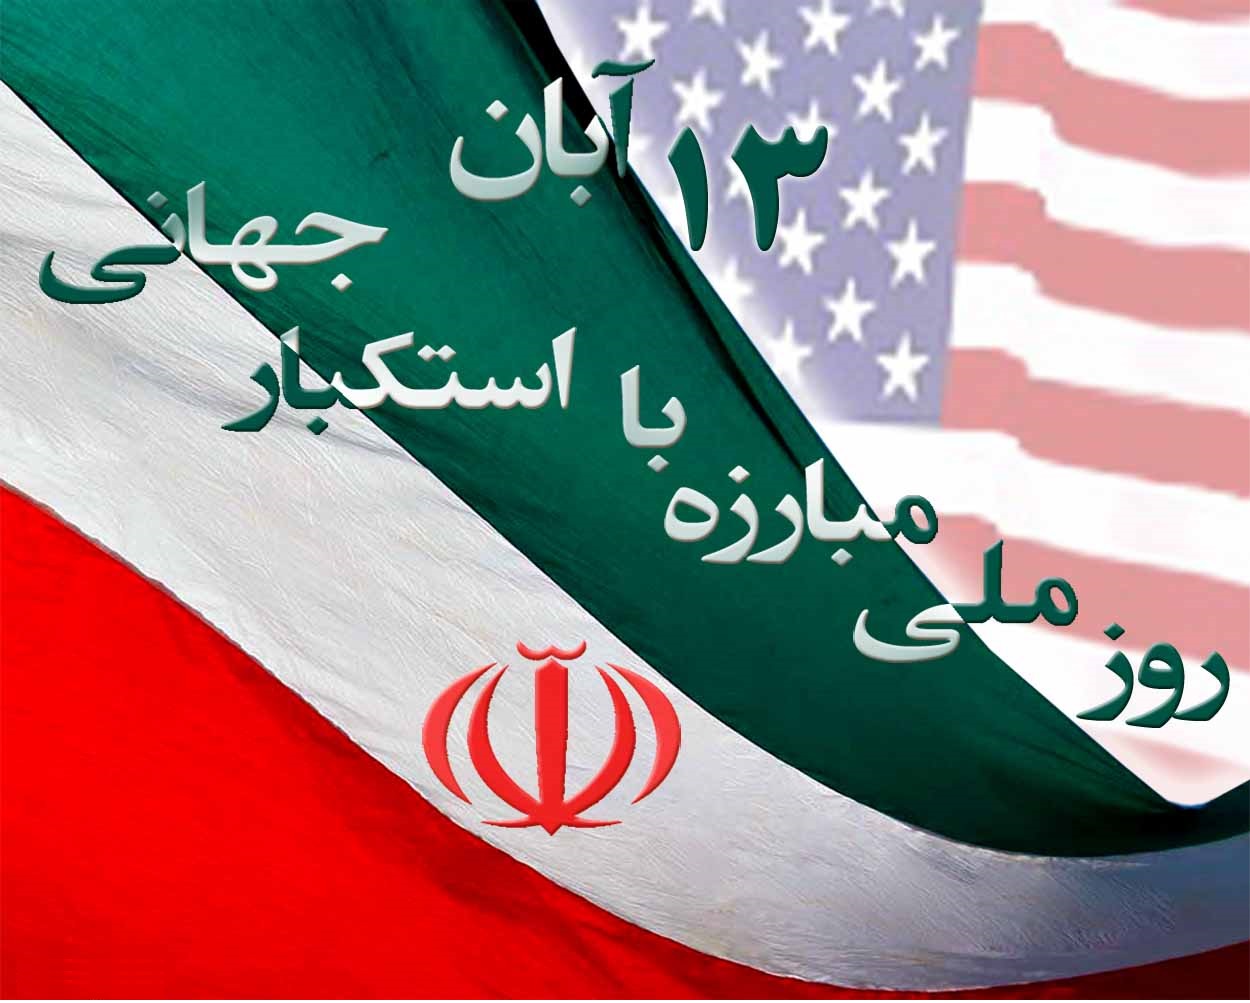 ۱۳ آبان آغاز فروپاشی سلطه آمریکا بر جهان و اوج استکبارستیزی ملت ایران